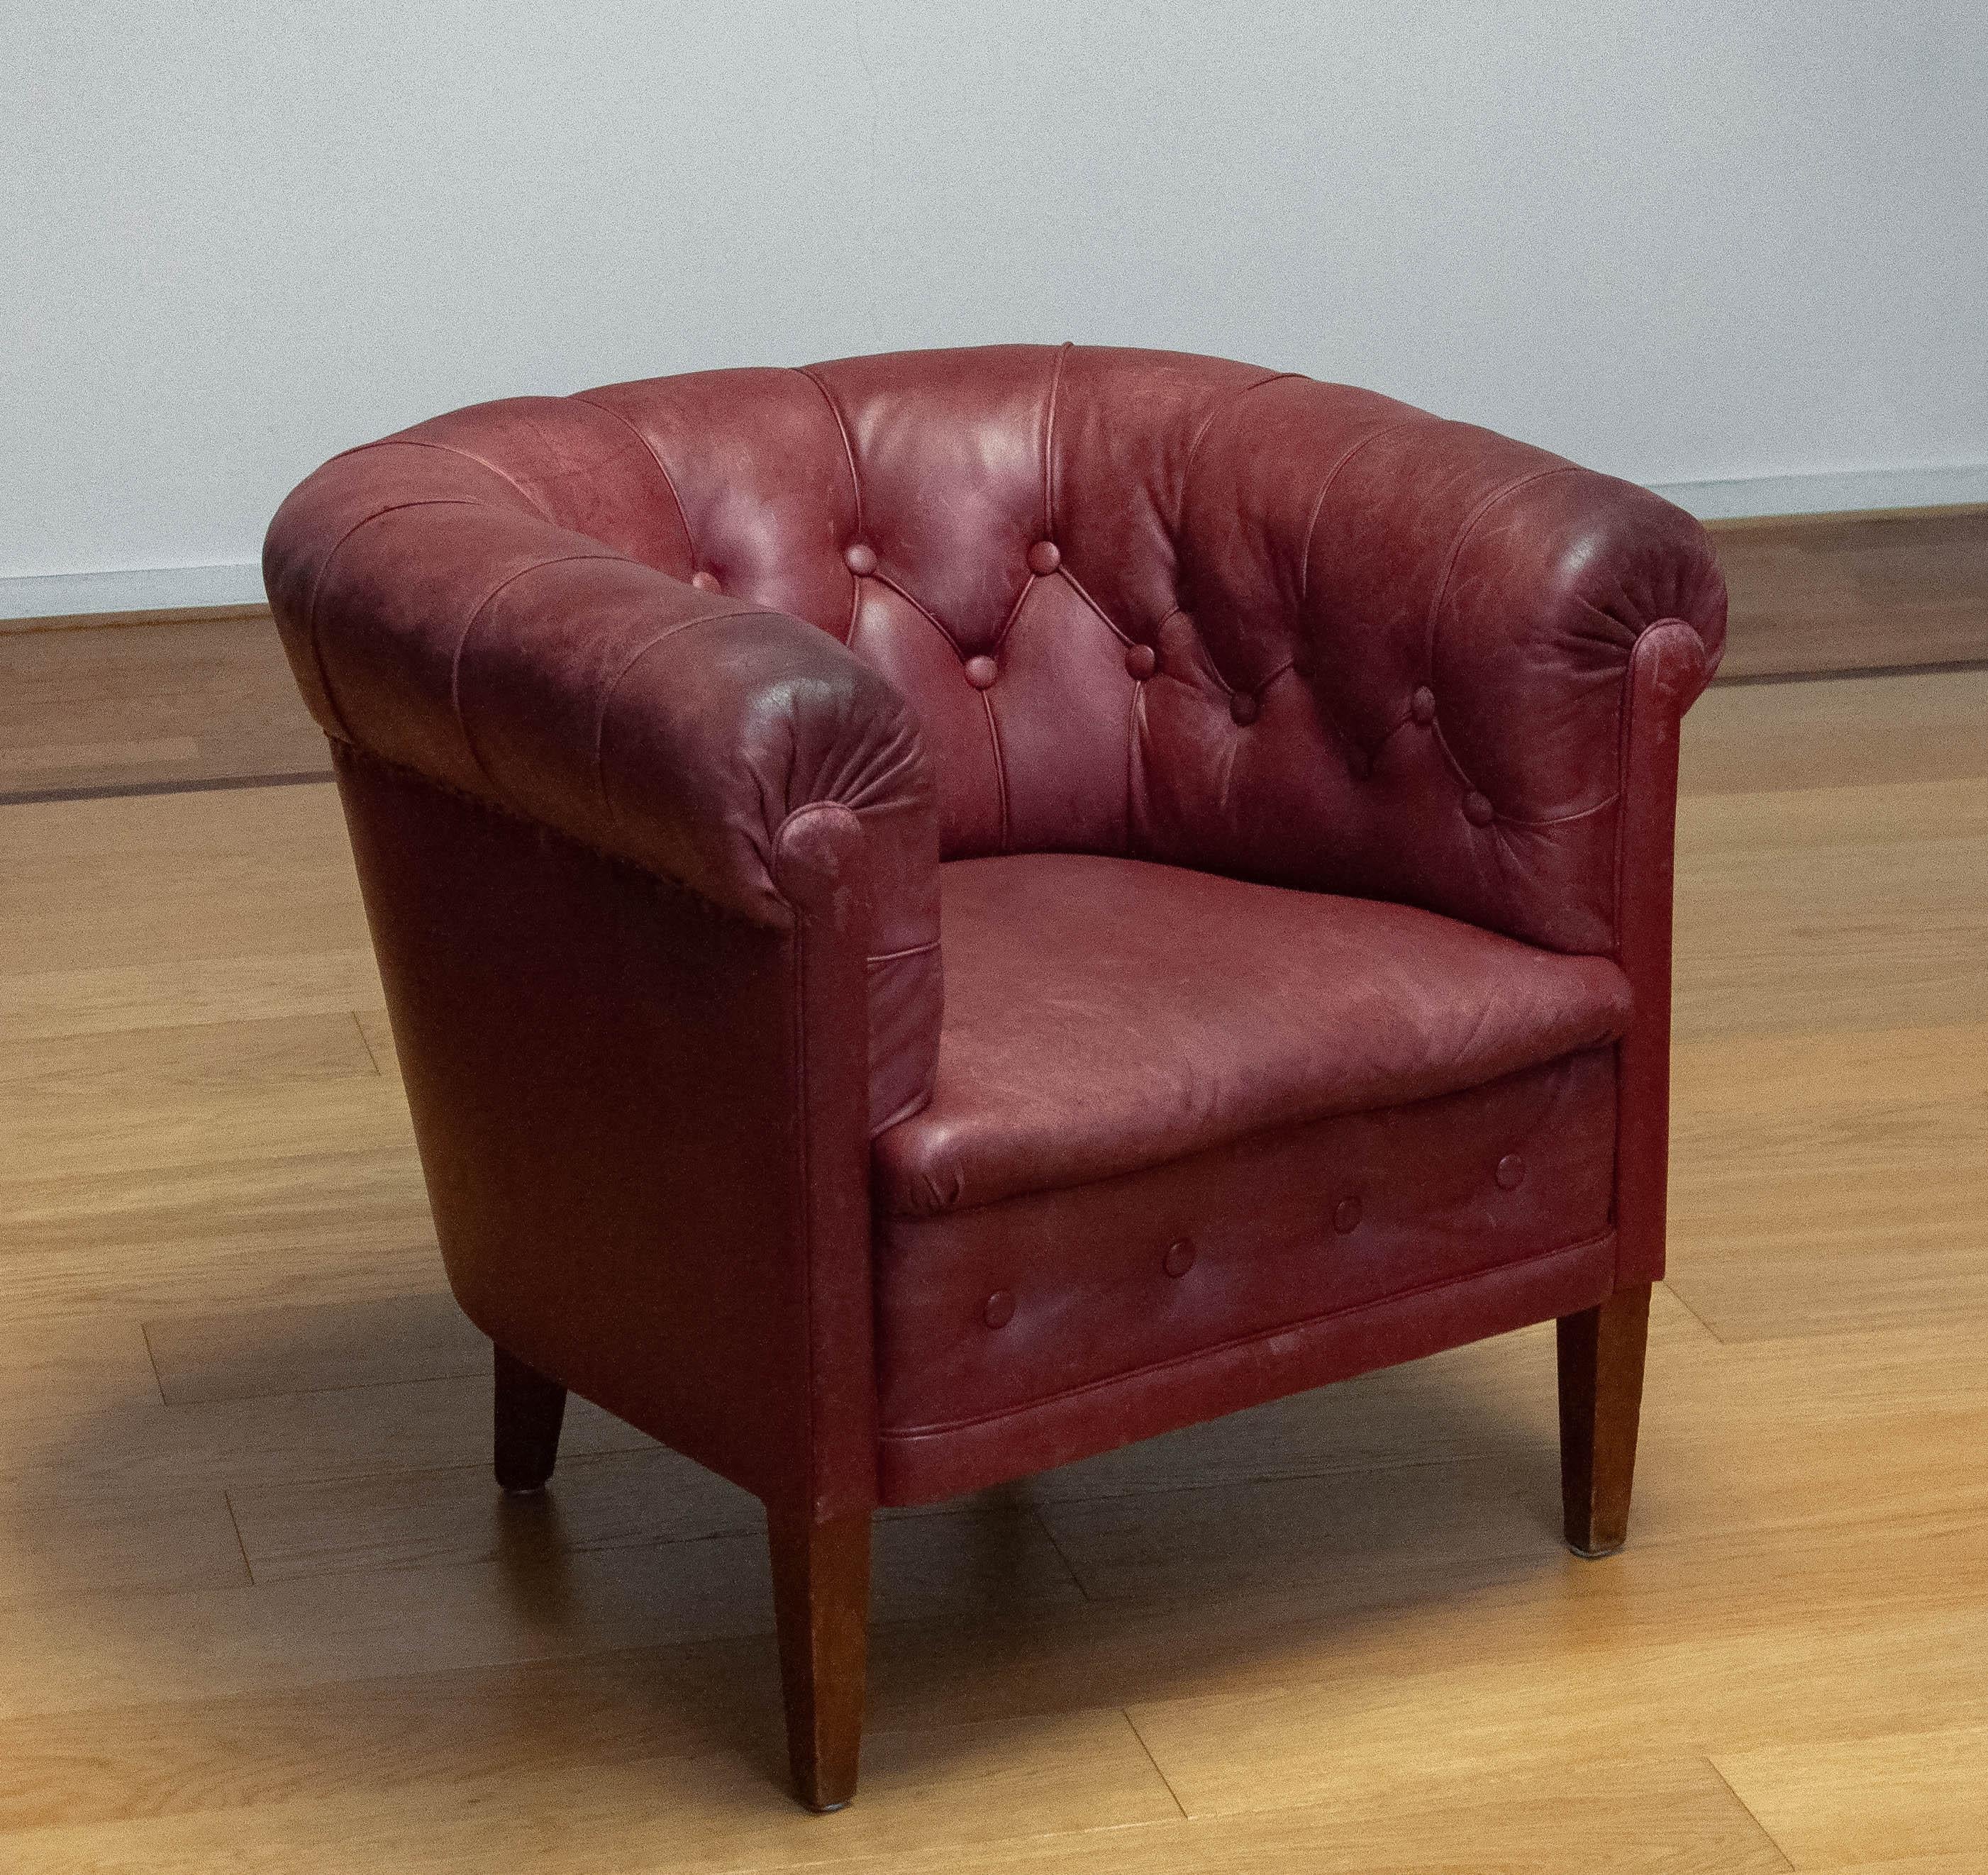 Magnifique fauteuil club rouge cramoisi fabriqué dans les années 1930 en Suède. La chaise est toujours en état d'origine et donc le cuir a une grande patine vraie les années. Le cuir est en bon état et encore très lisse. Les ressorts, les sangles